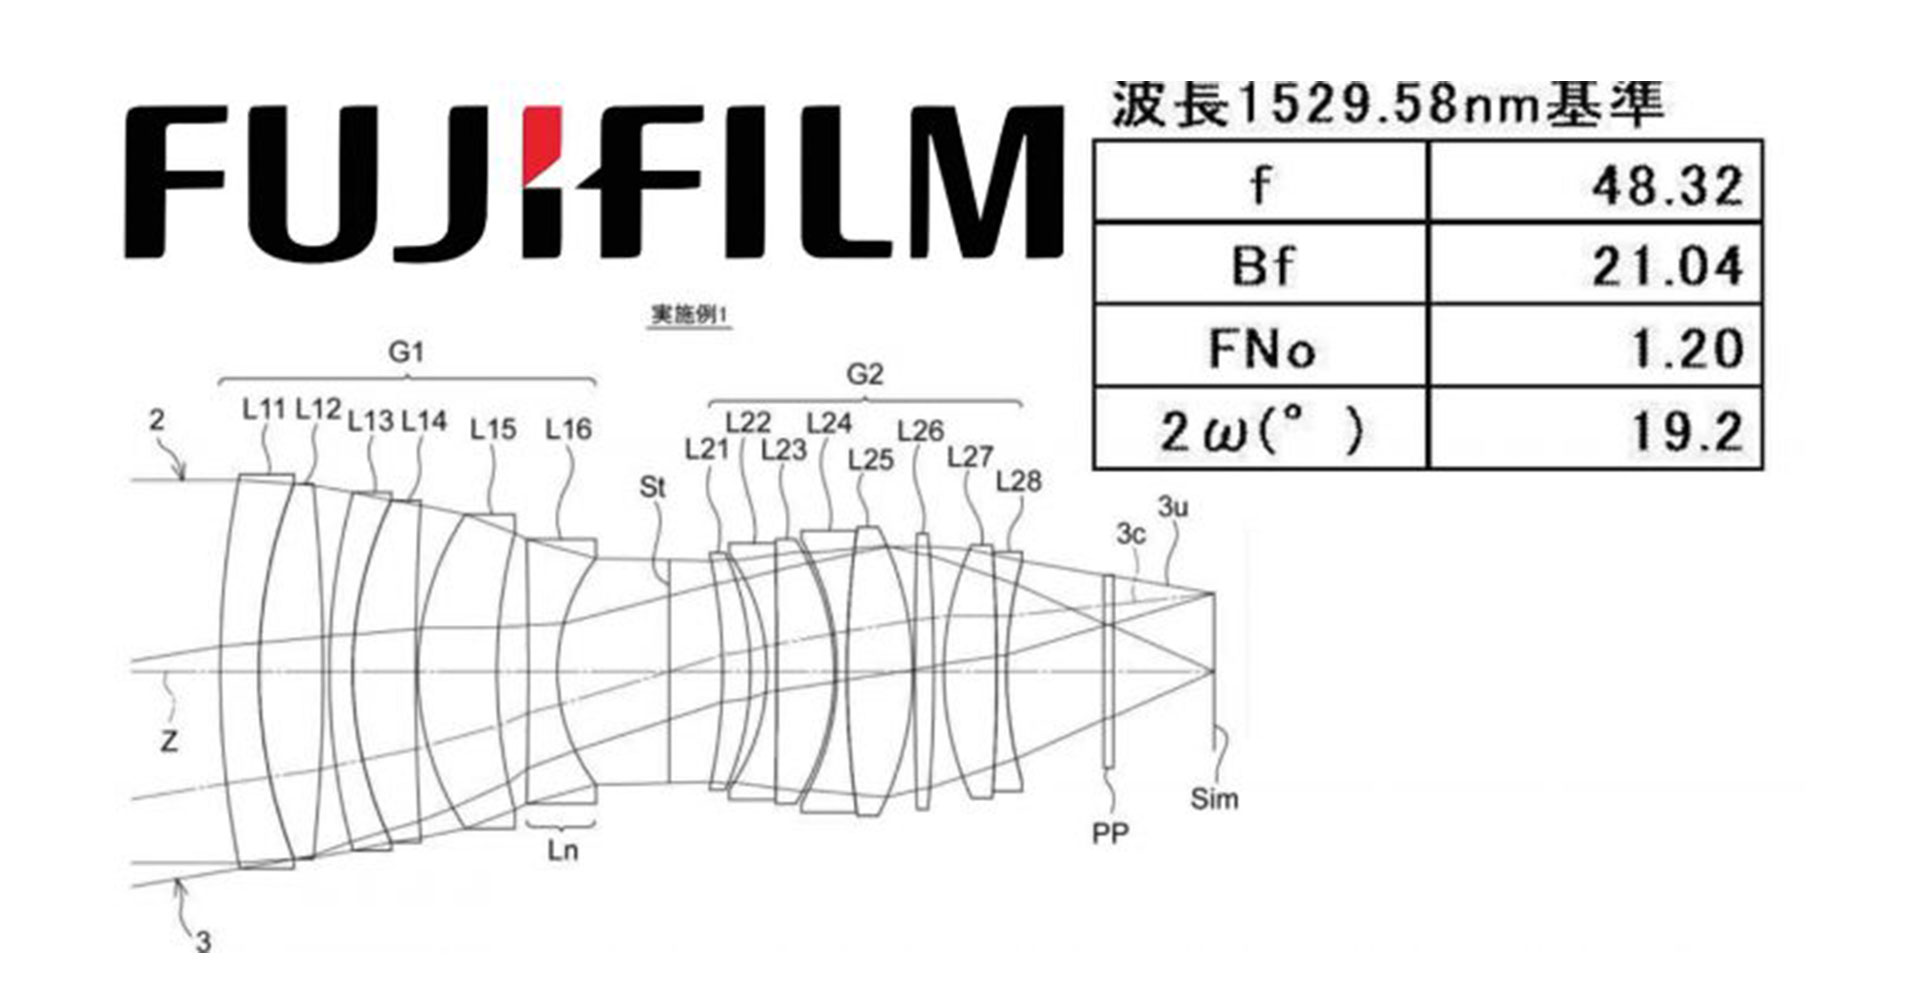 พบสิทธิบัตรเลนส์ Fujifilm 48mm F/1.2 สำหรับกล้องมิเรอร์เลสเซนเซอร์ 1 นิ้ว!